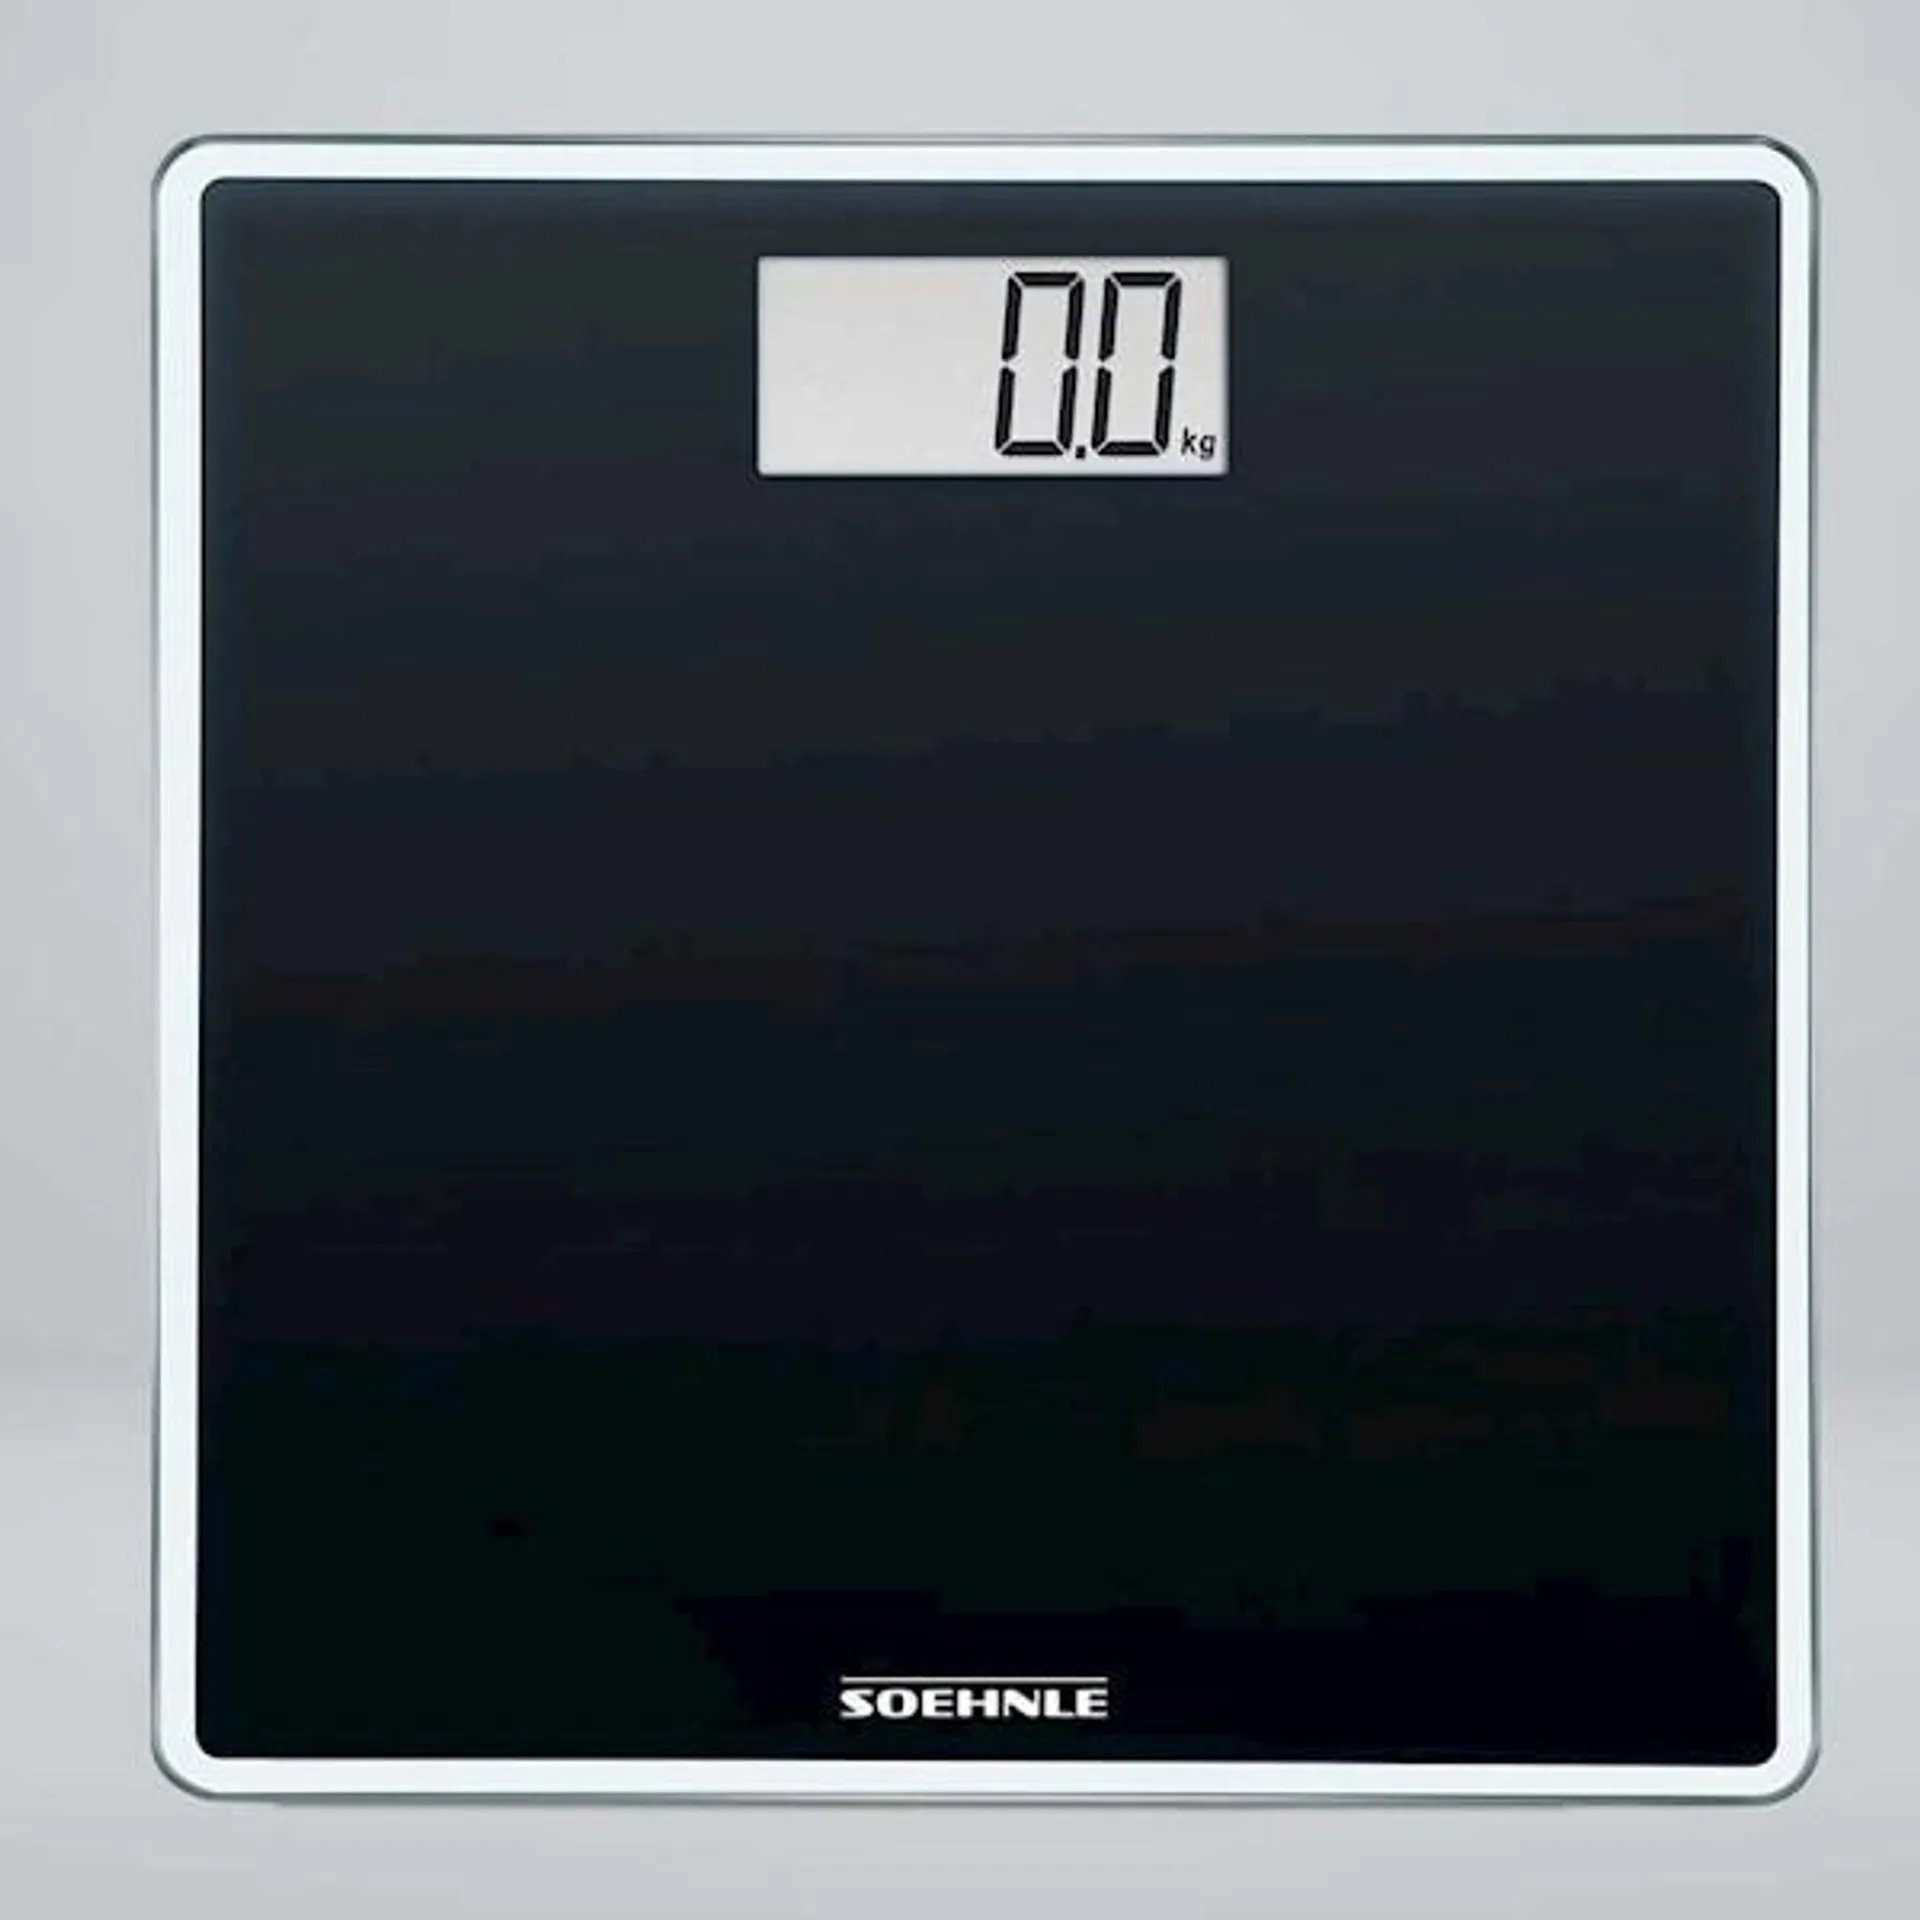 Soehnle Digital Personal Style Sense Compact 100 Bathroom Scale